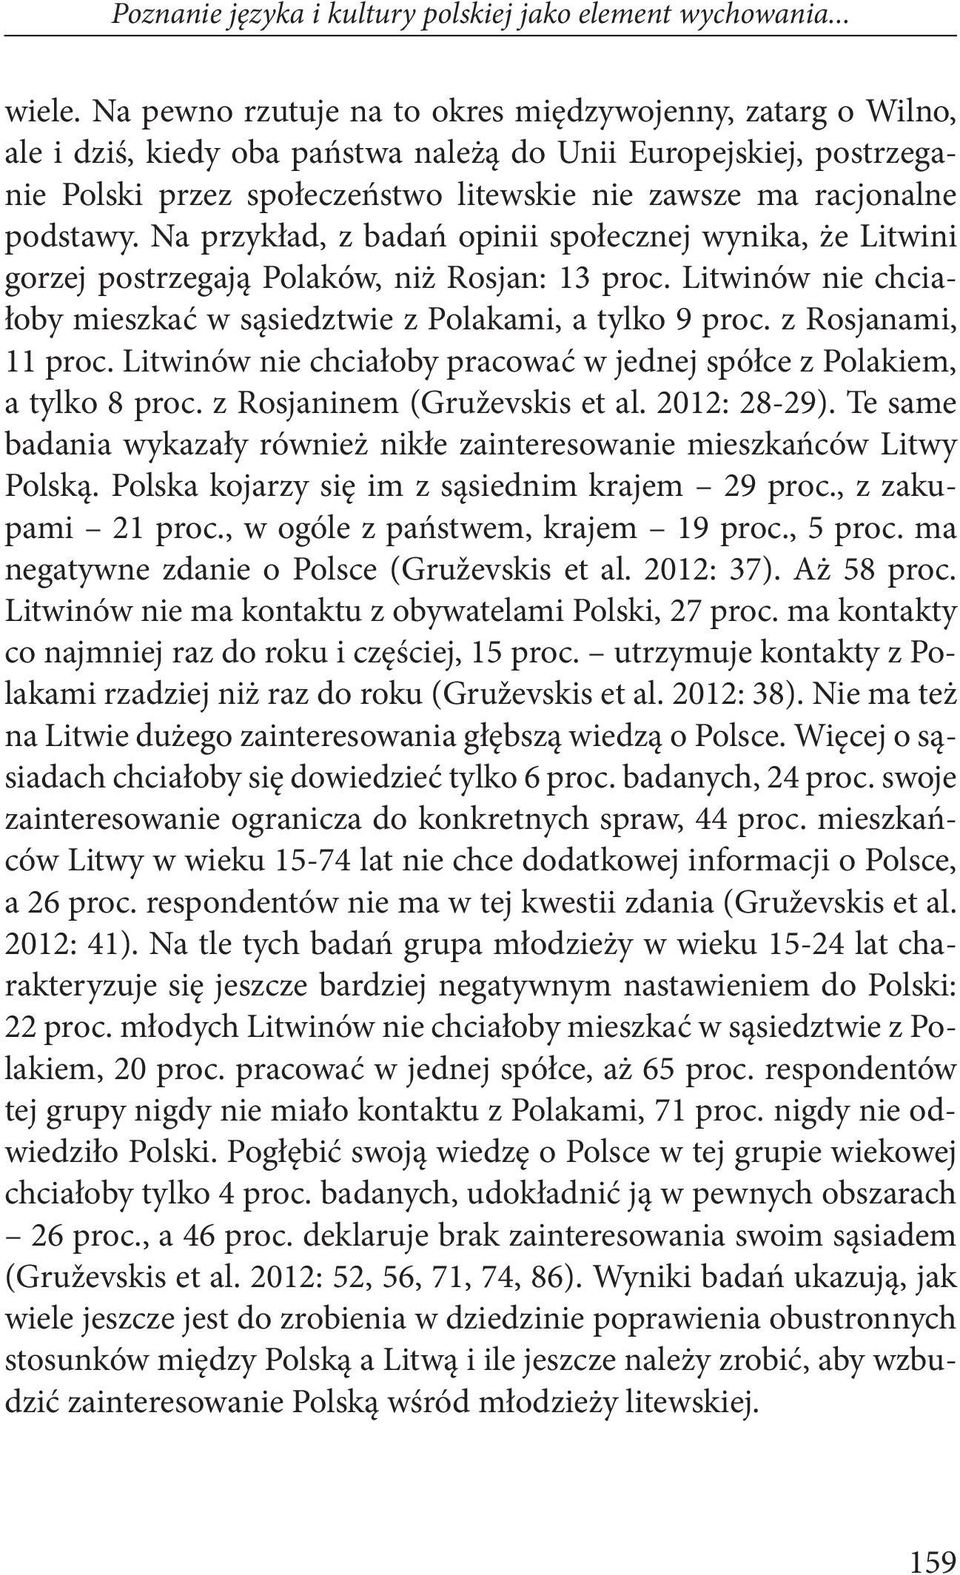 podstawy. Na przykład, z badań opinii społecznej wynika, że Litwini gorzej postrzegają Polaków, niż Rosjan: 13 proc. Litwinów nie chciałoby mieszkać w sąsiedztwie z Polakami, a tylko 9 proc.